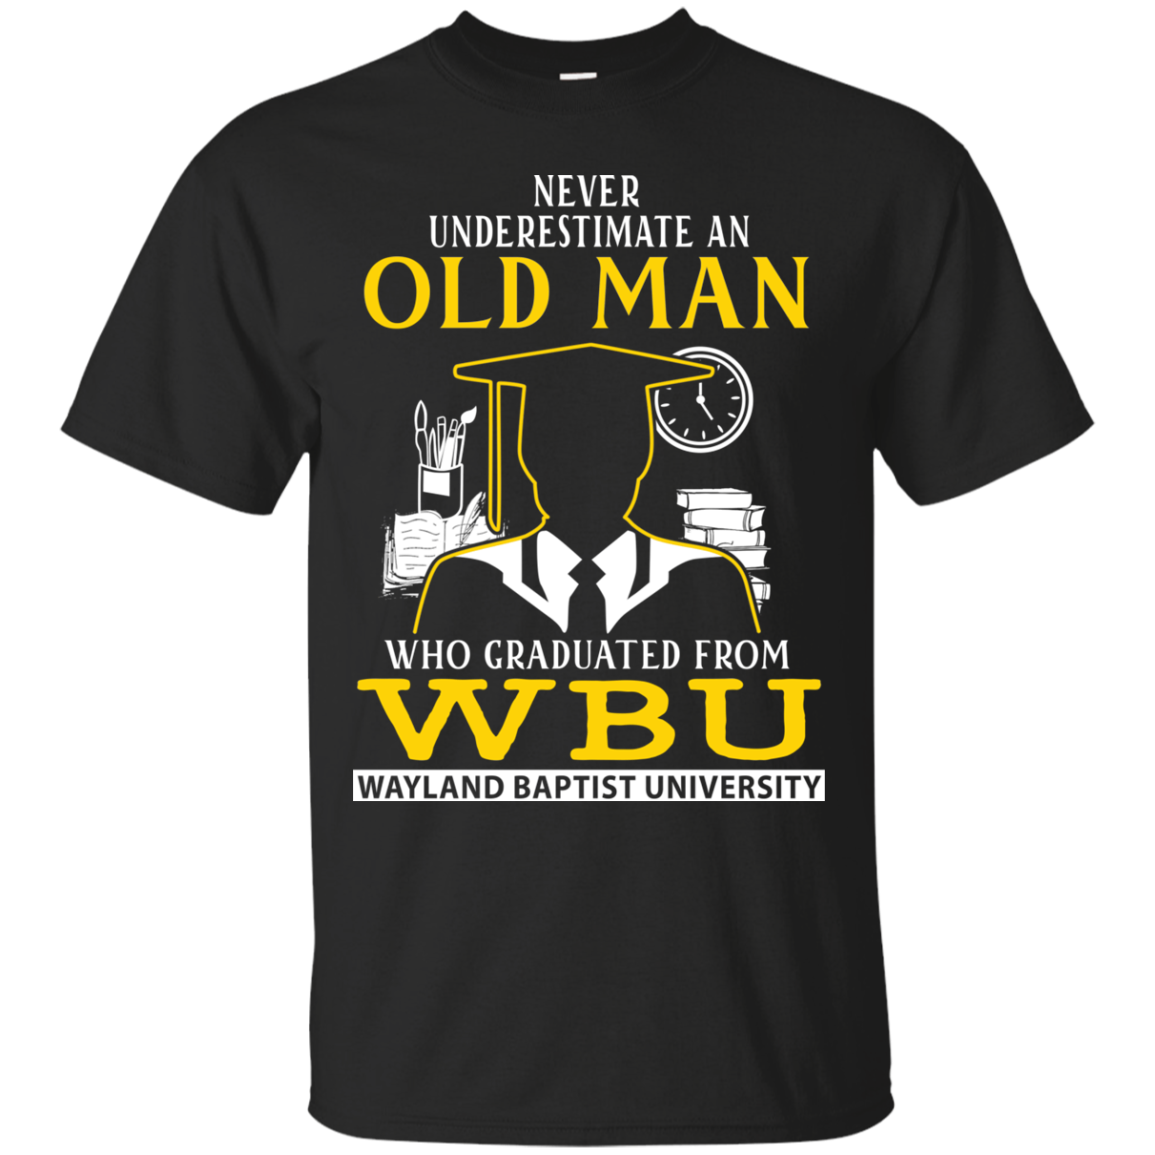 Wayland Baptist University Graduate Man T shirts - Amyna